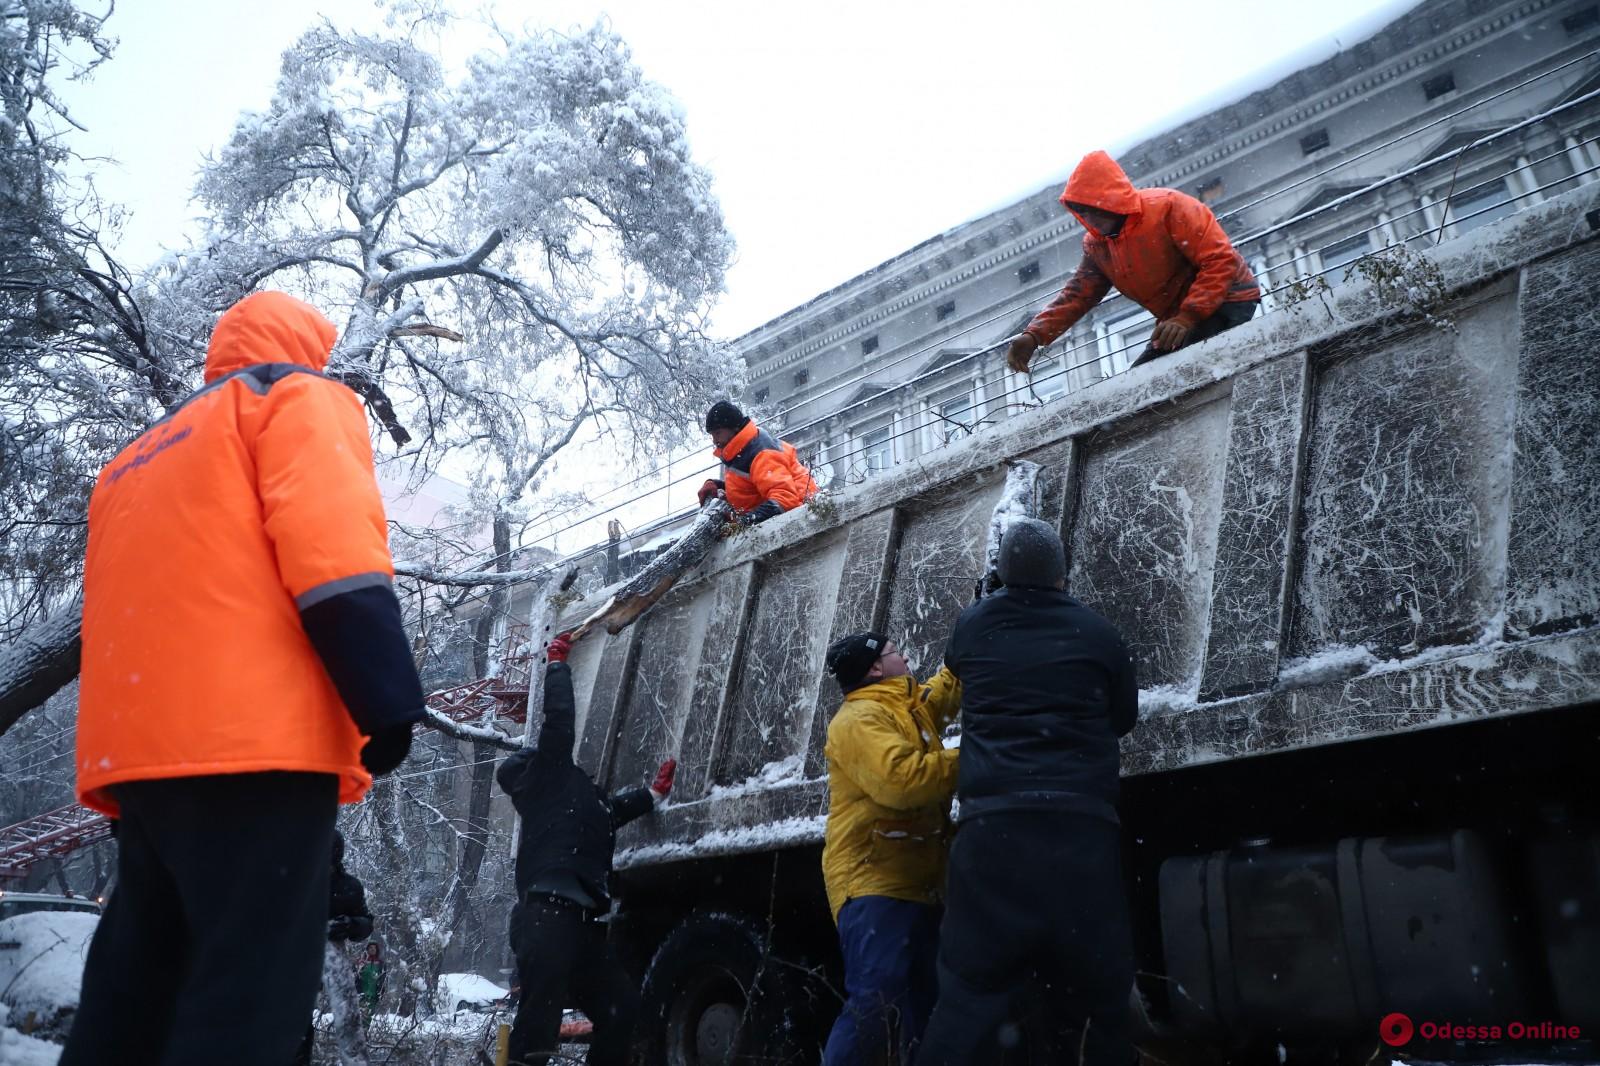 Мэр Одессы о скептиках, раскритиковавших труд коммунальщиков: «Попробуйте поработать лопатами в метель и мороз»